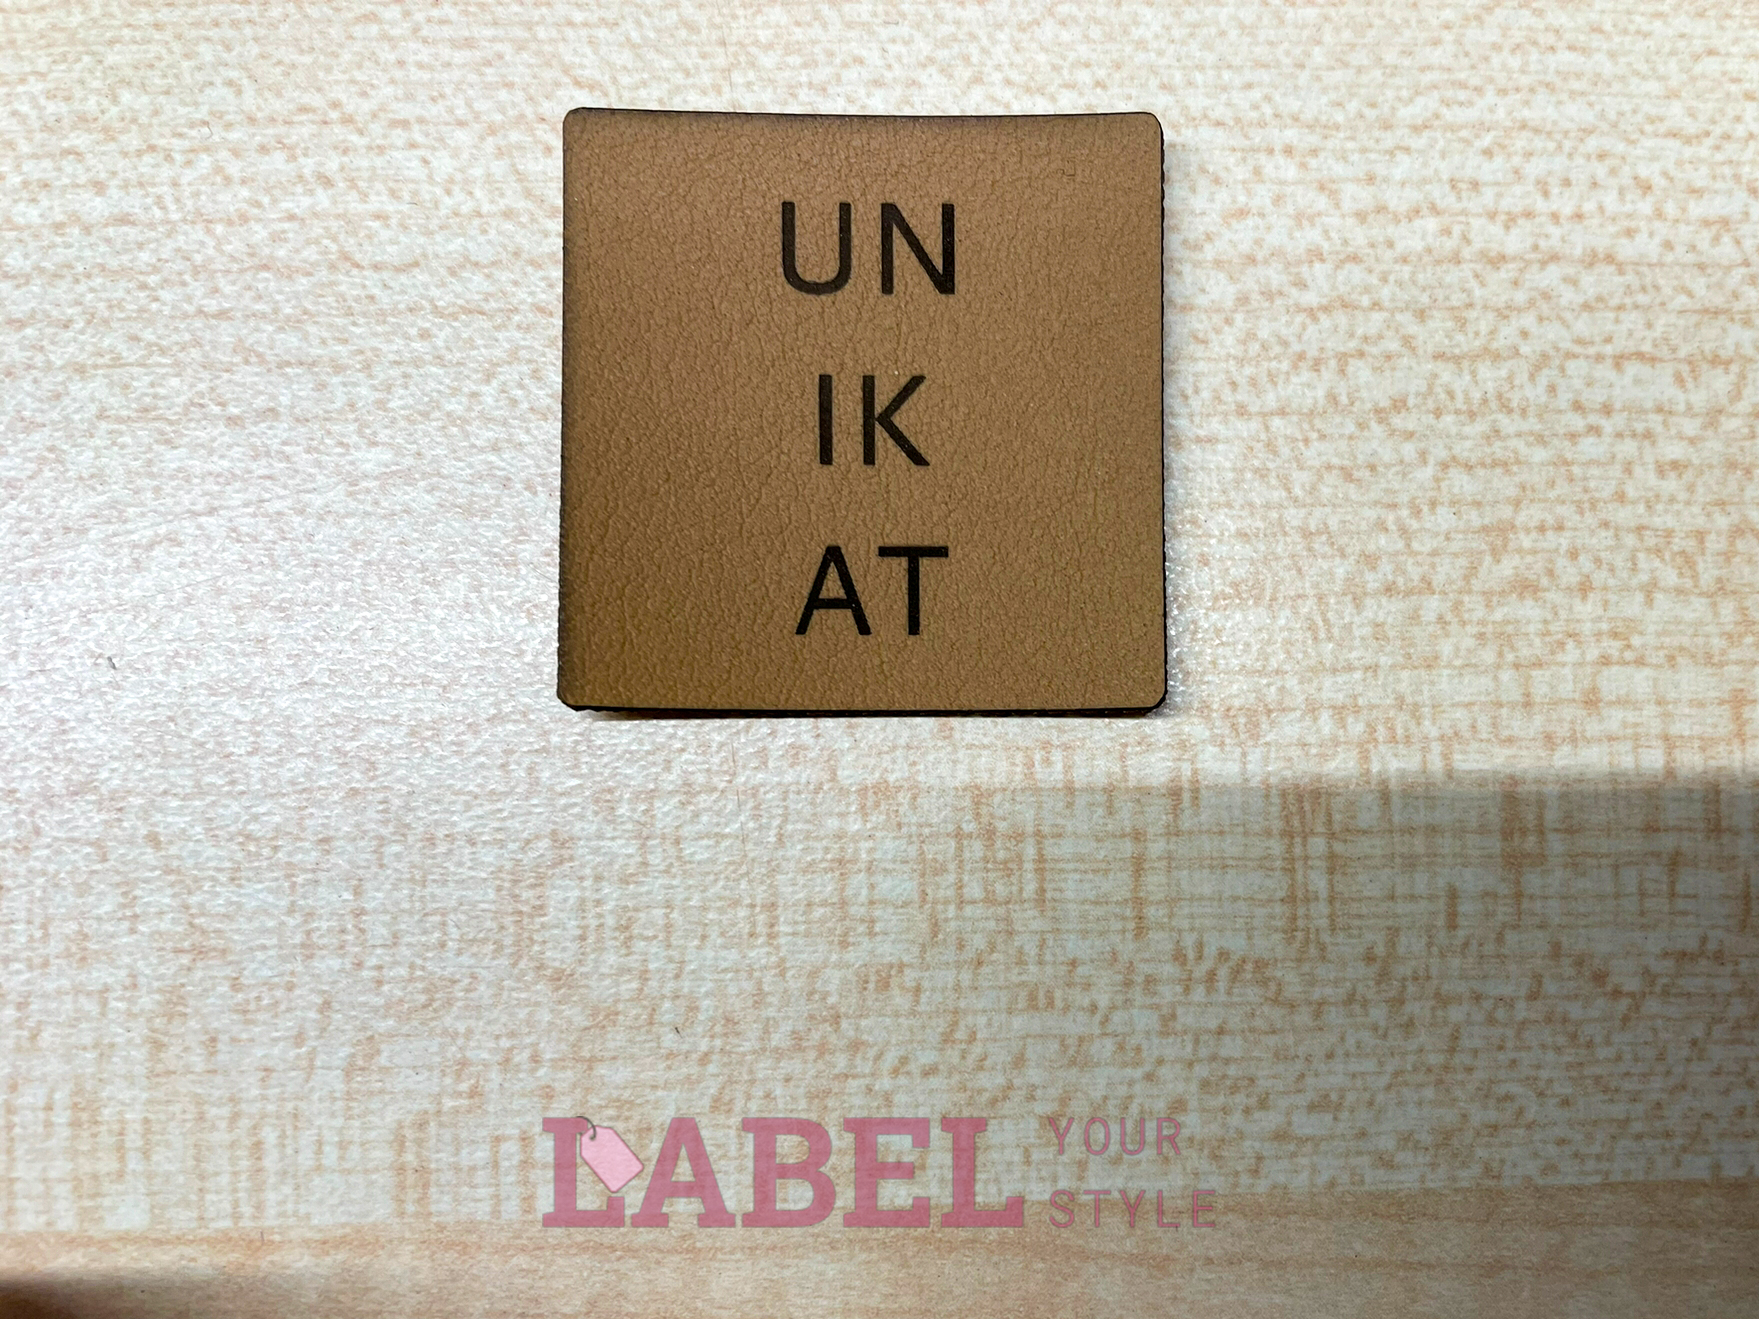 Label Viereck Kunstleder